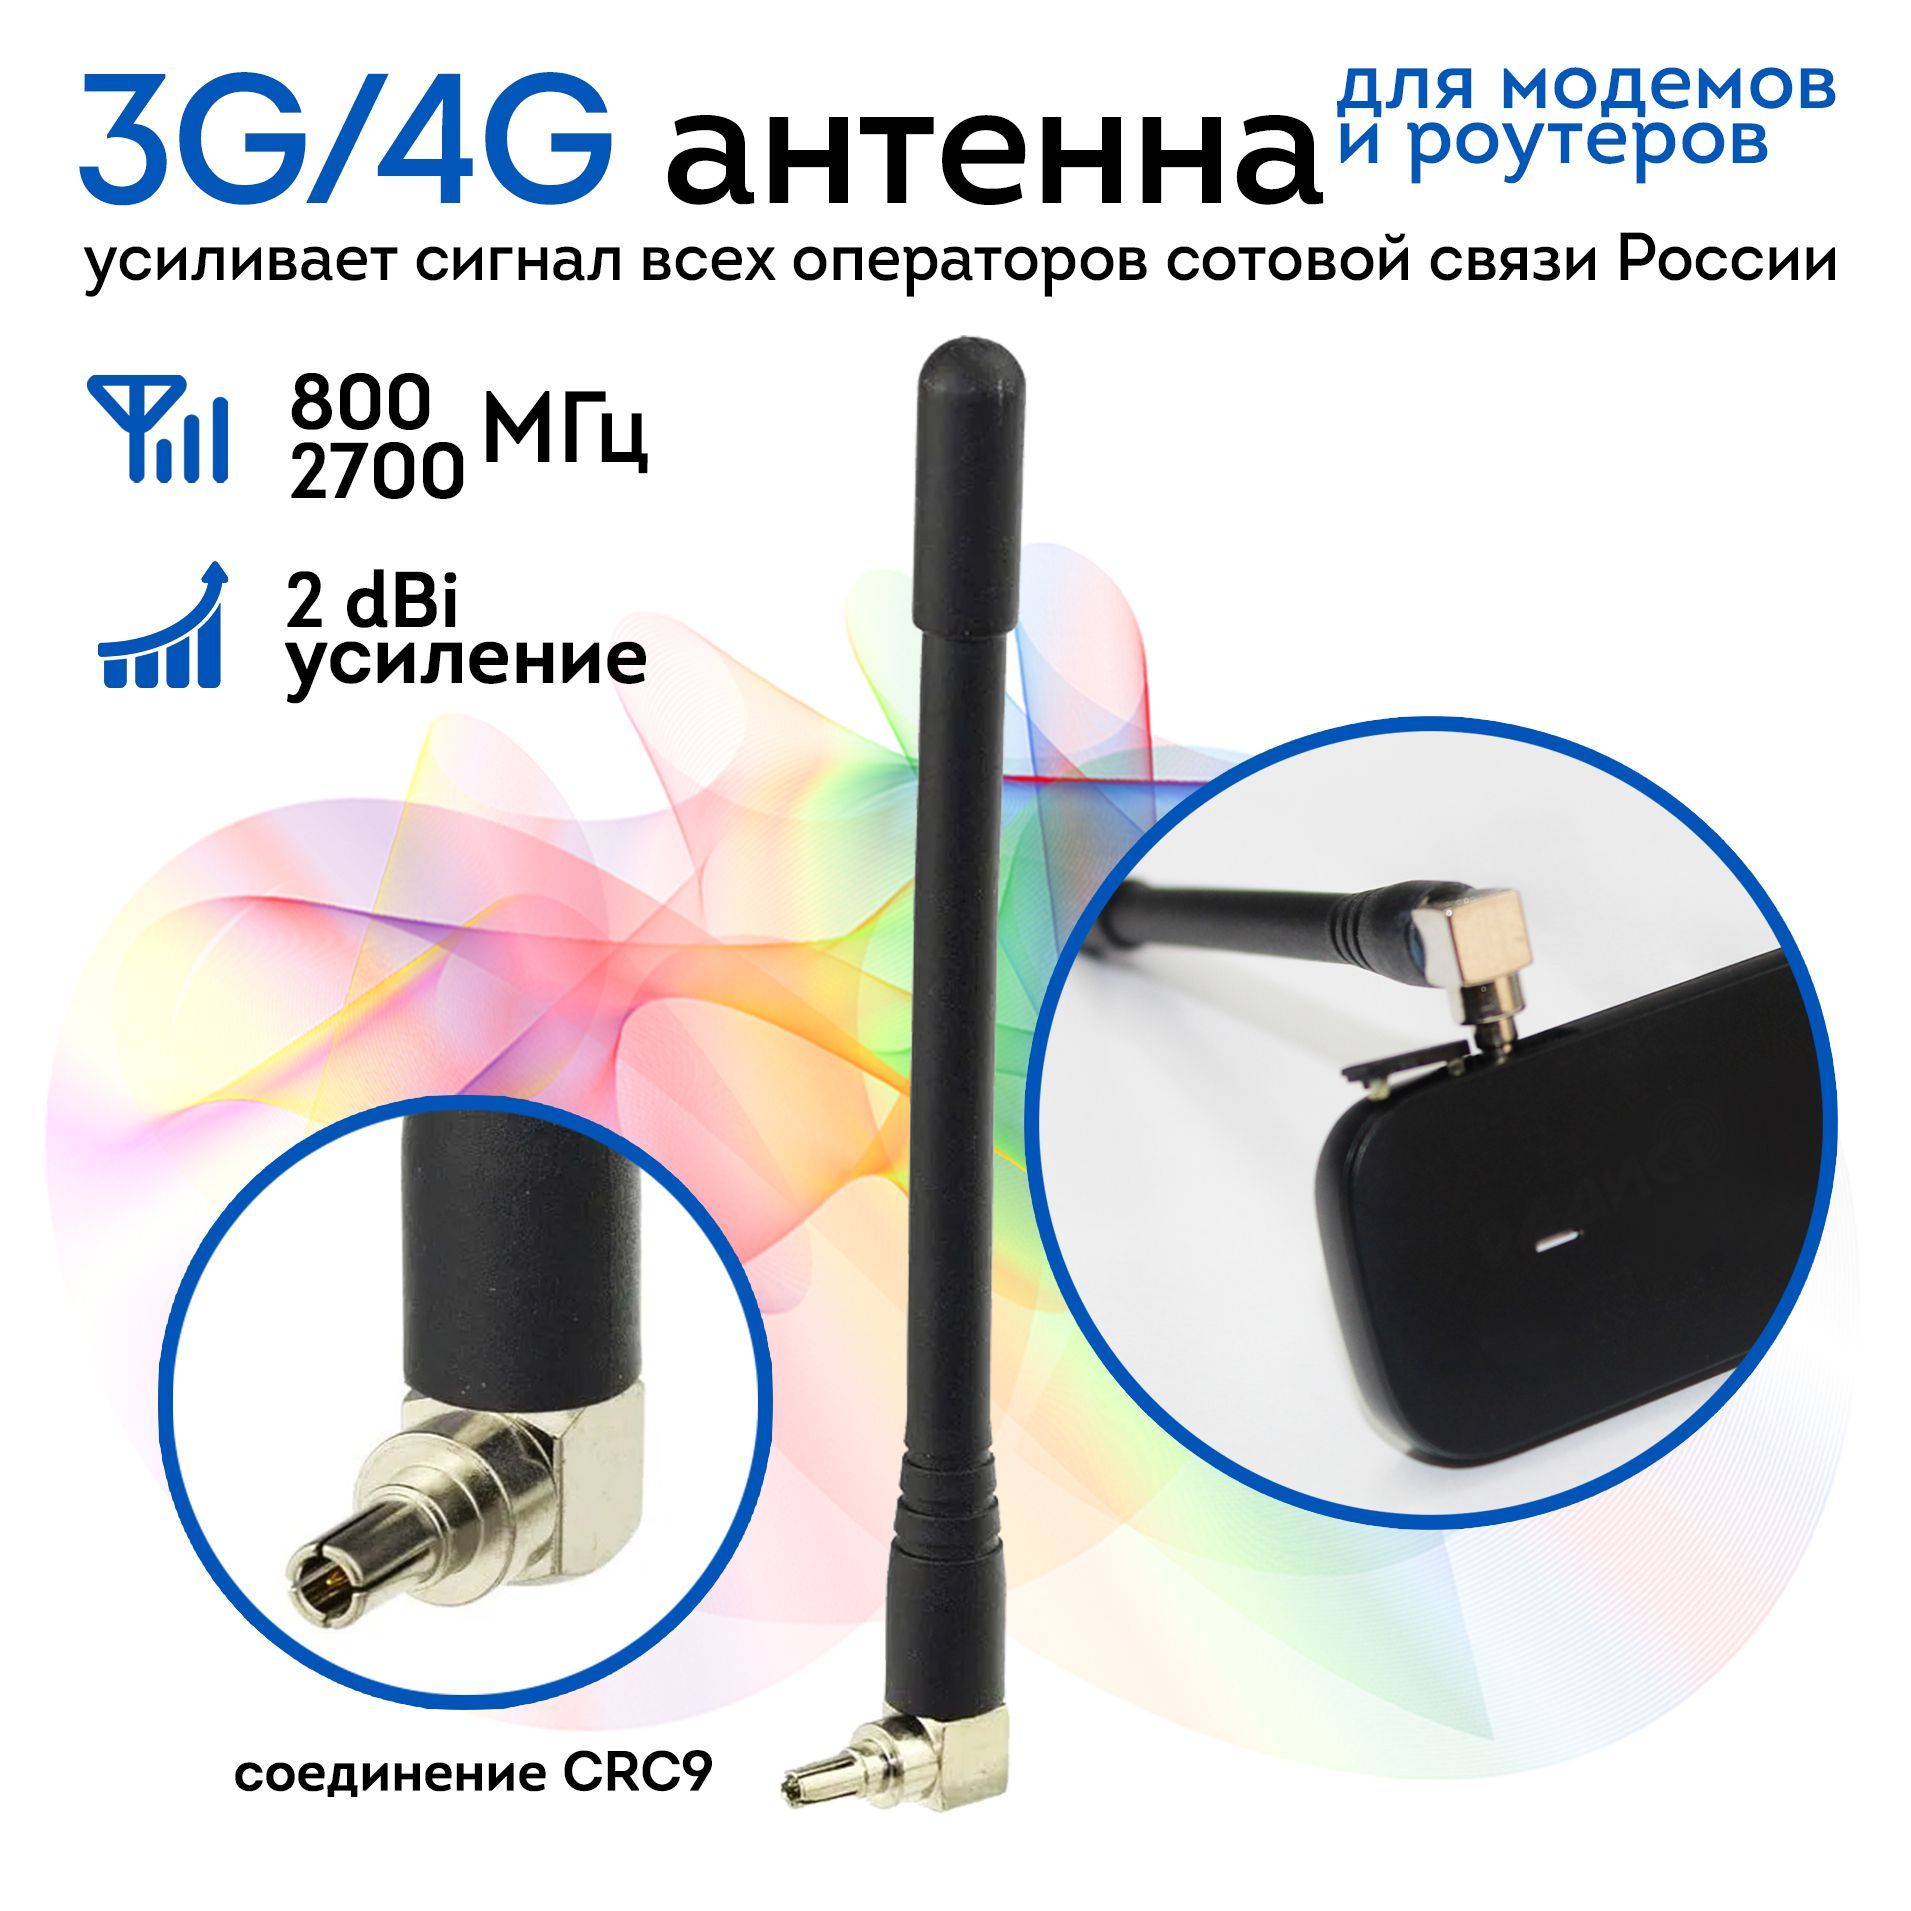 Самодельная антенна для 3G модема Интертелеком